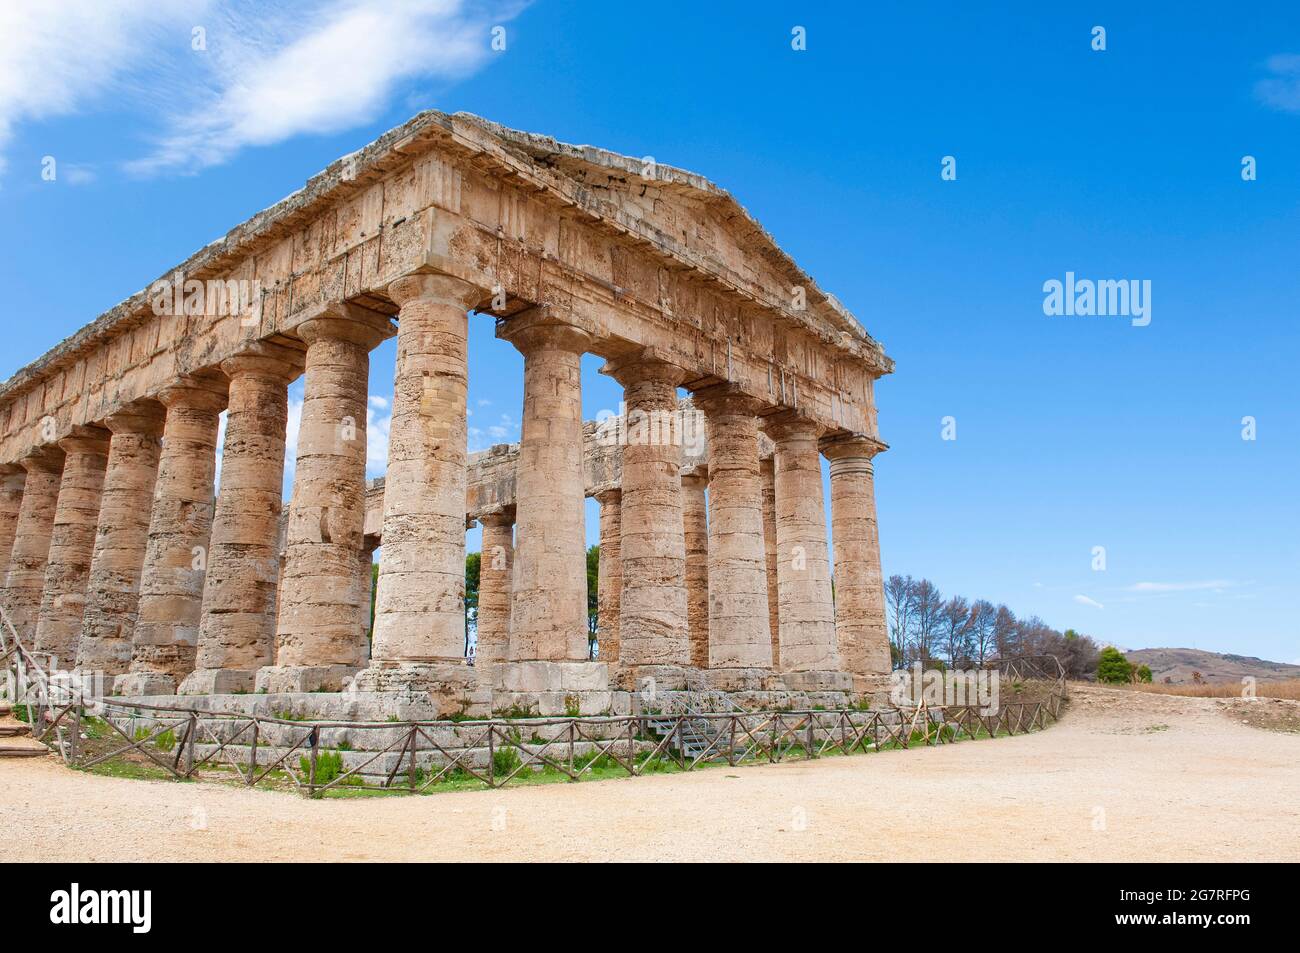 Ancien temple grec dorique de Segesta, paysage à Segesta, province de Trapani, Sicile, Italie Banque D'Images